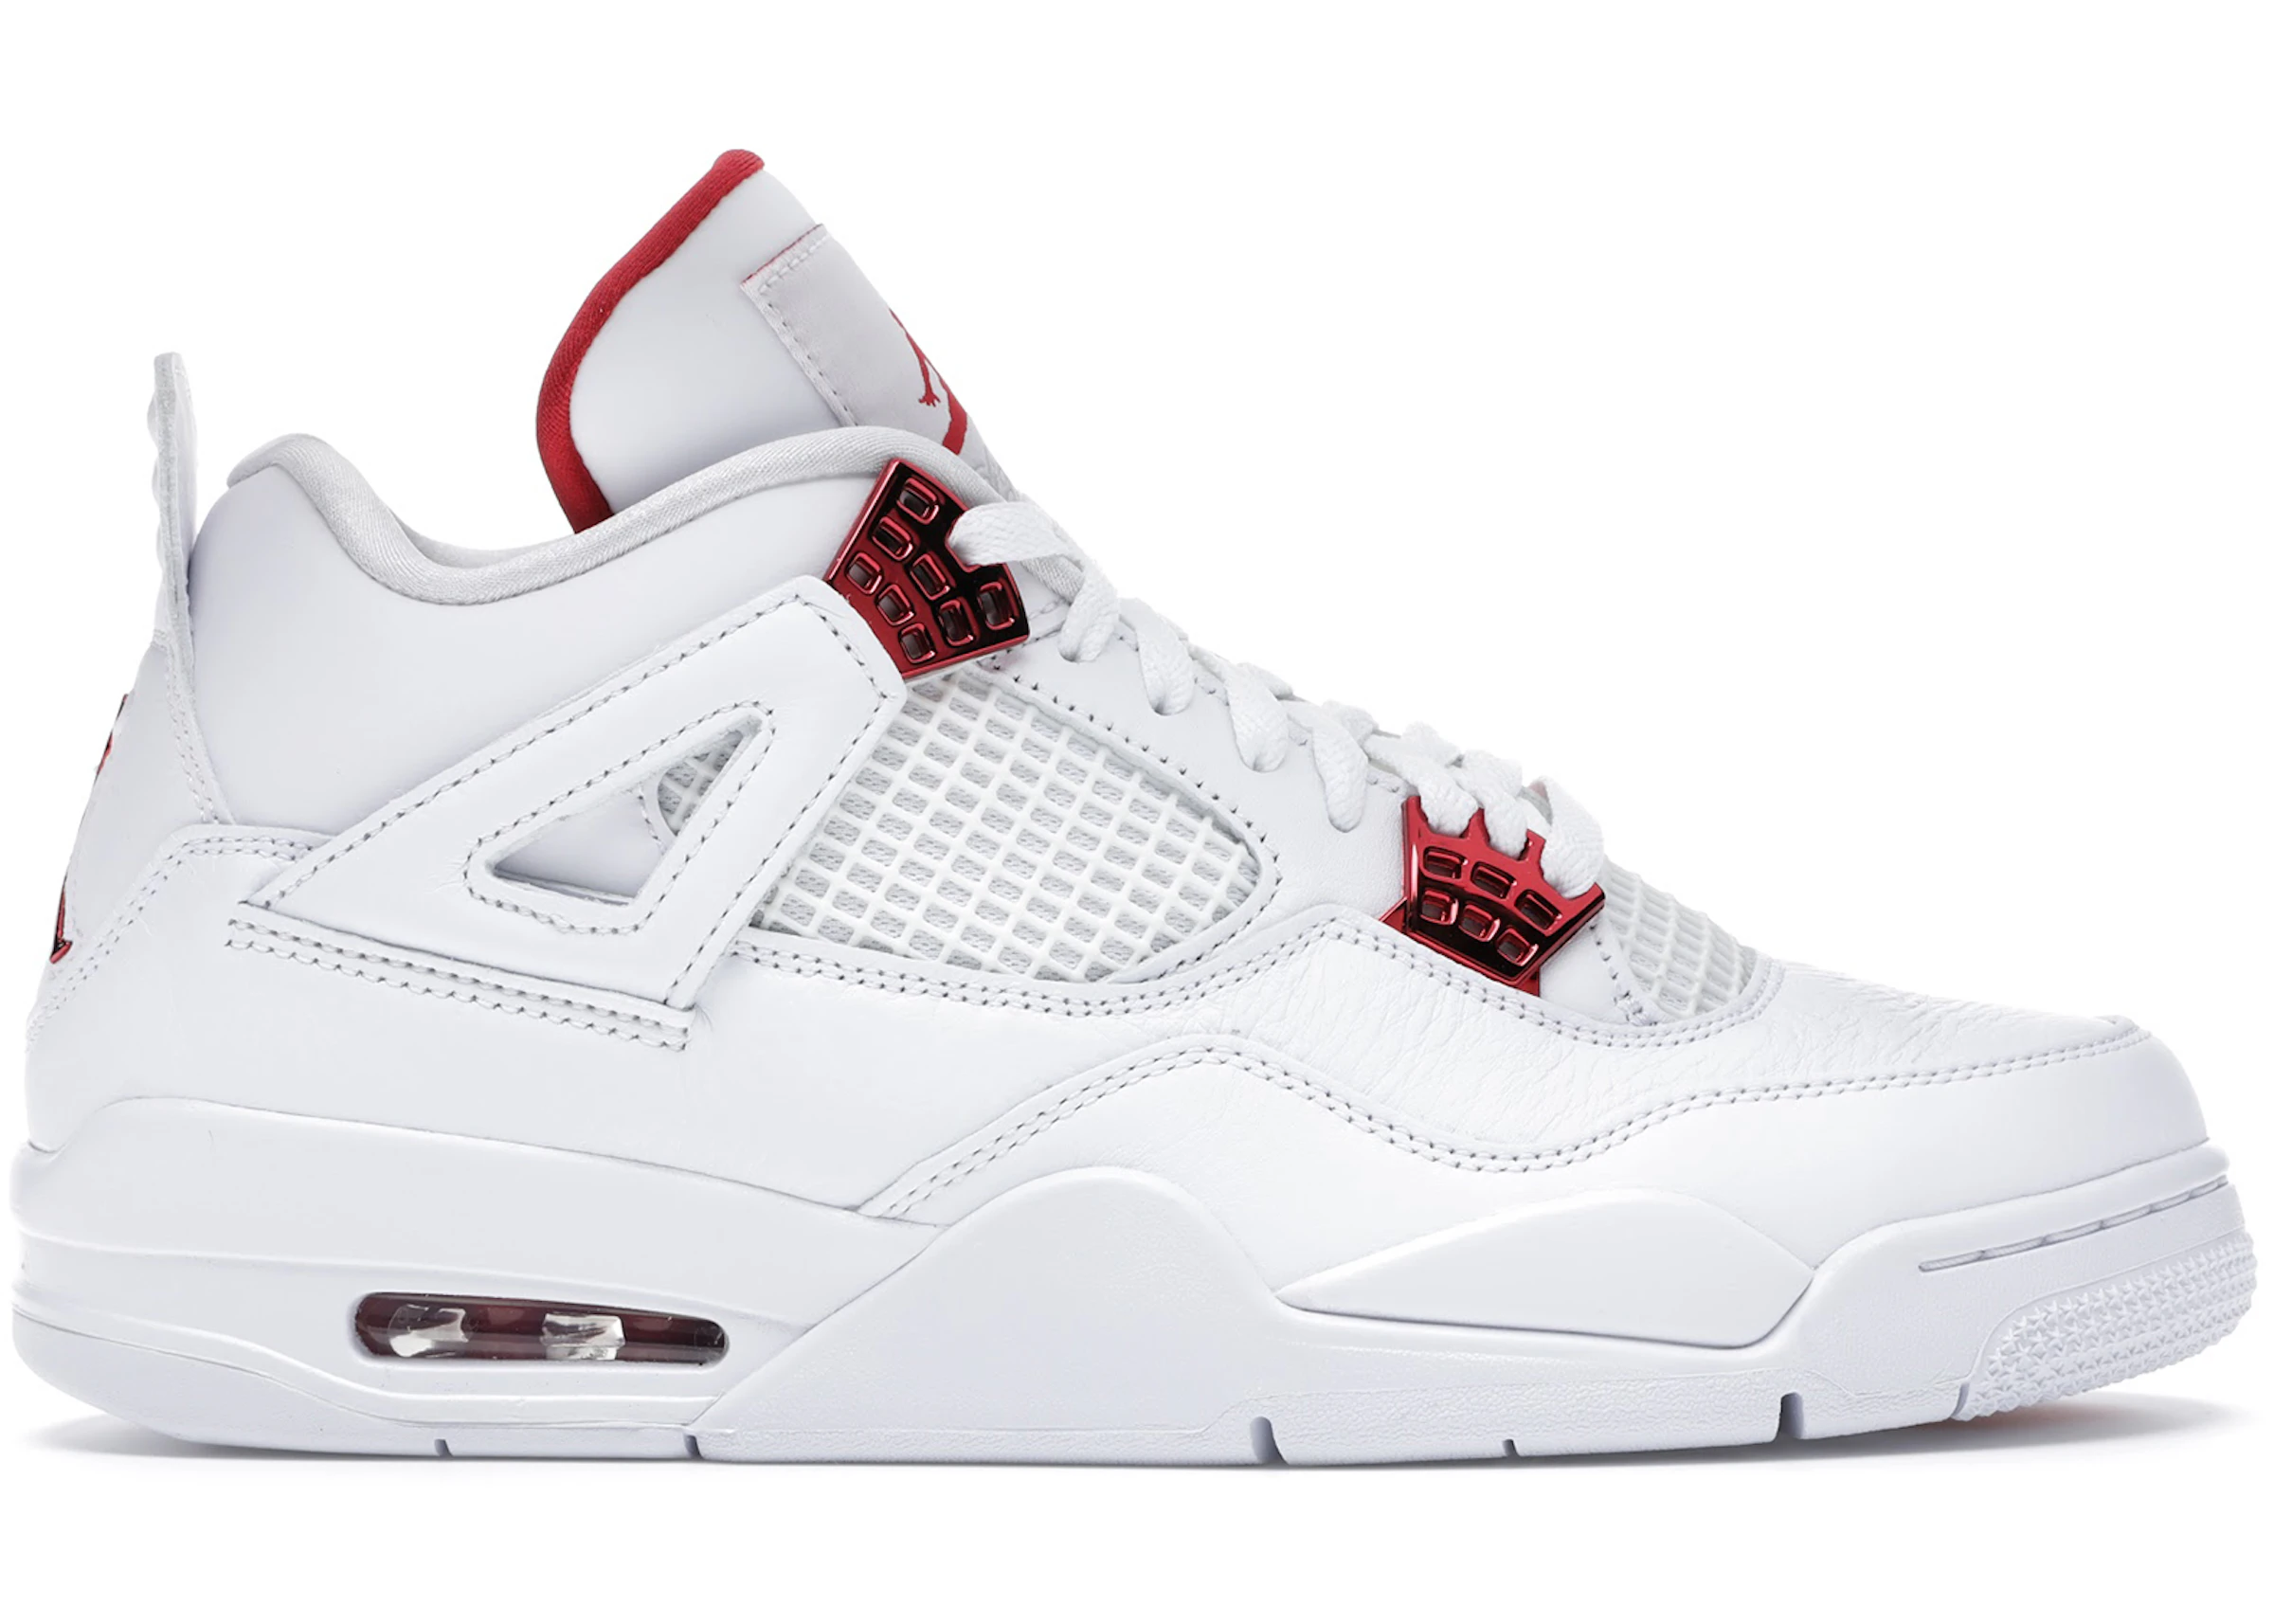 Buy Air jordan 4 white oreo Jordan 4 Shoes & New Sneakers - StockX